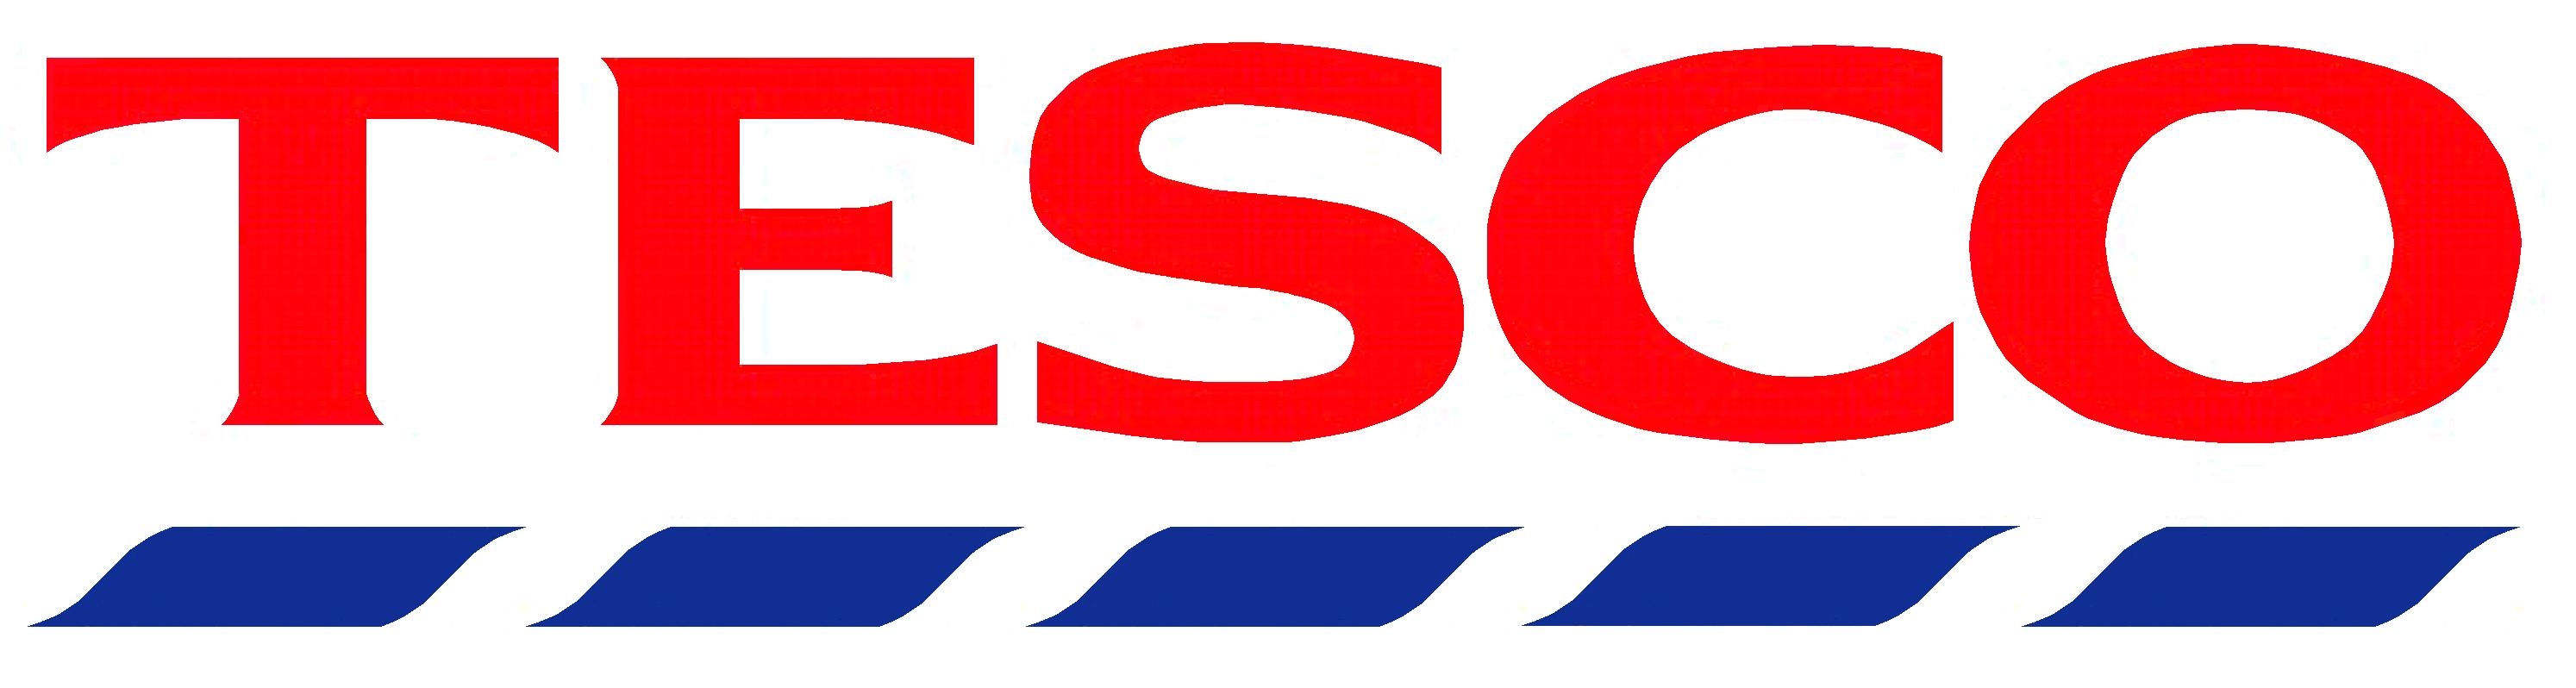 tesco business logo design